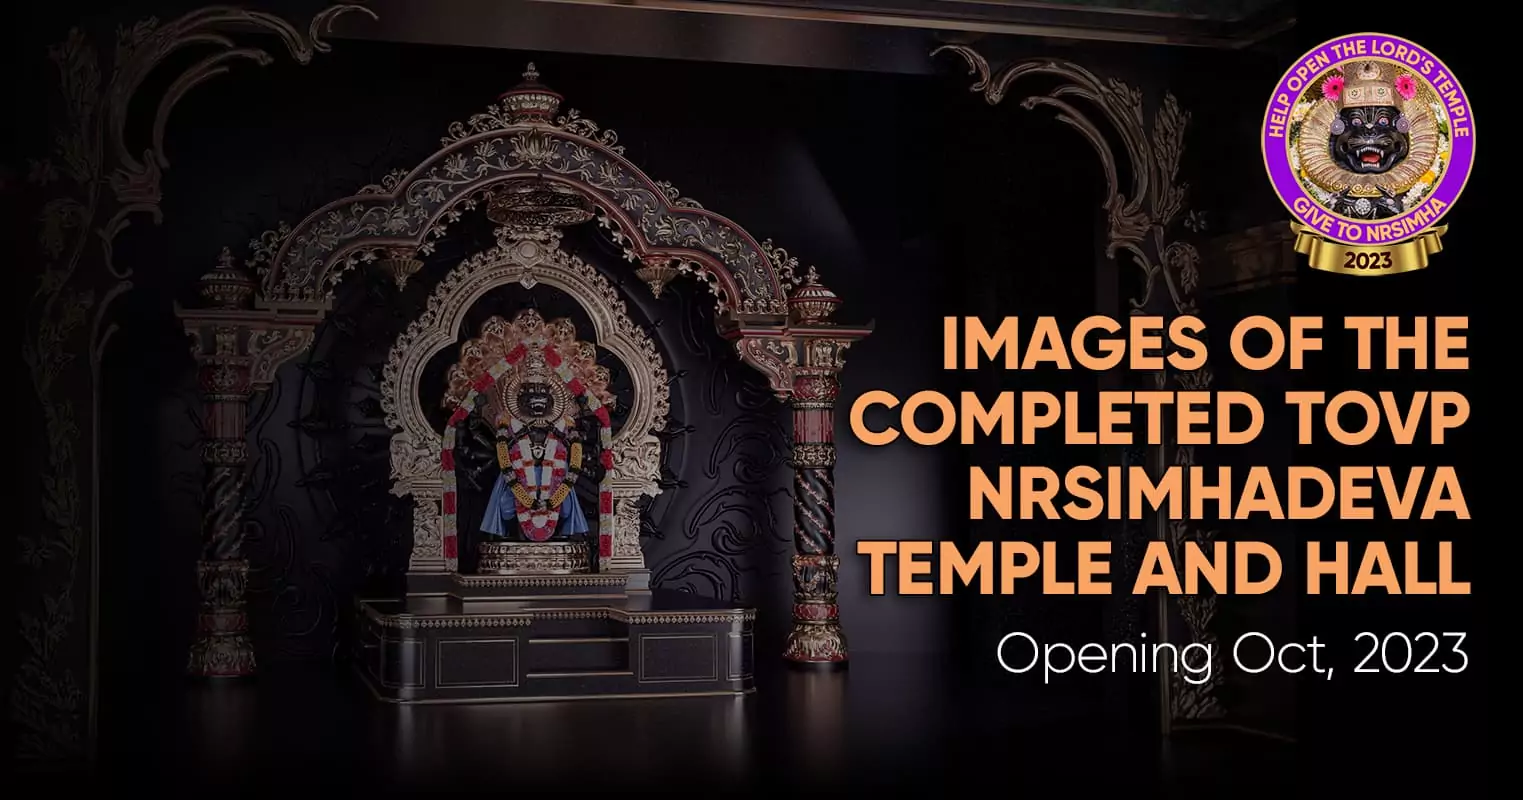 Immagini del tempio e della sala TOVP Nrsimhadeva completati